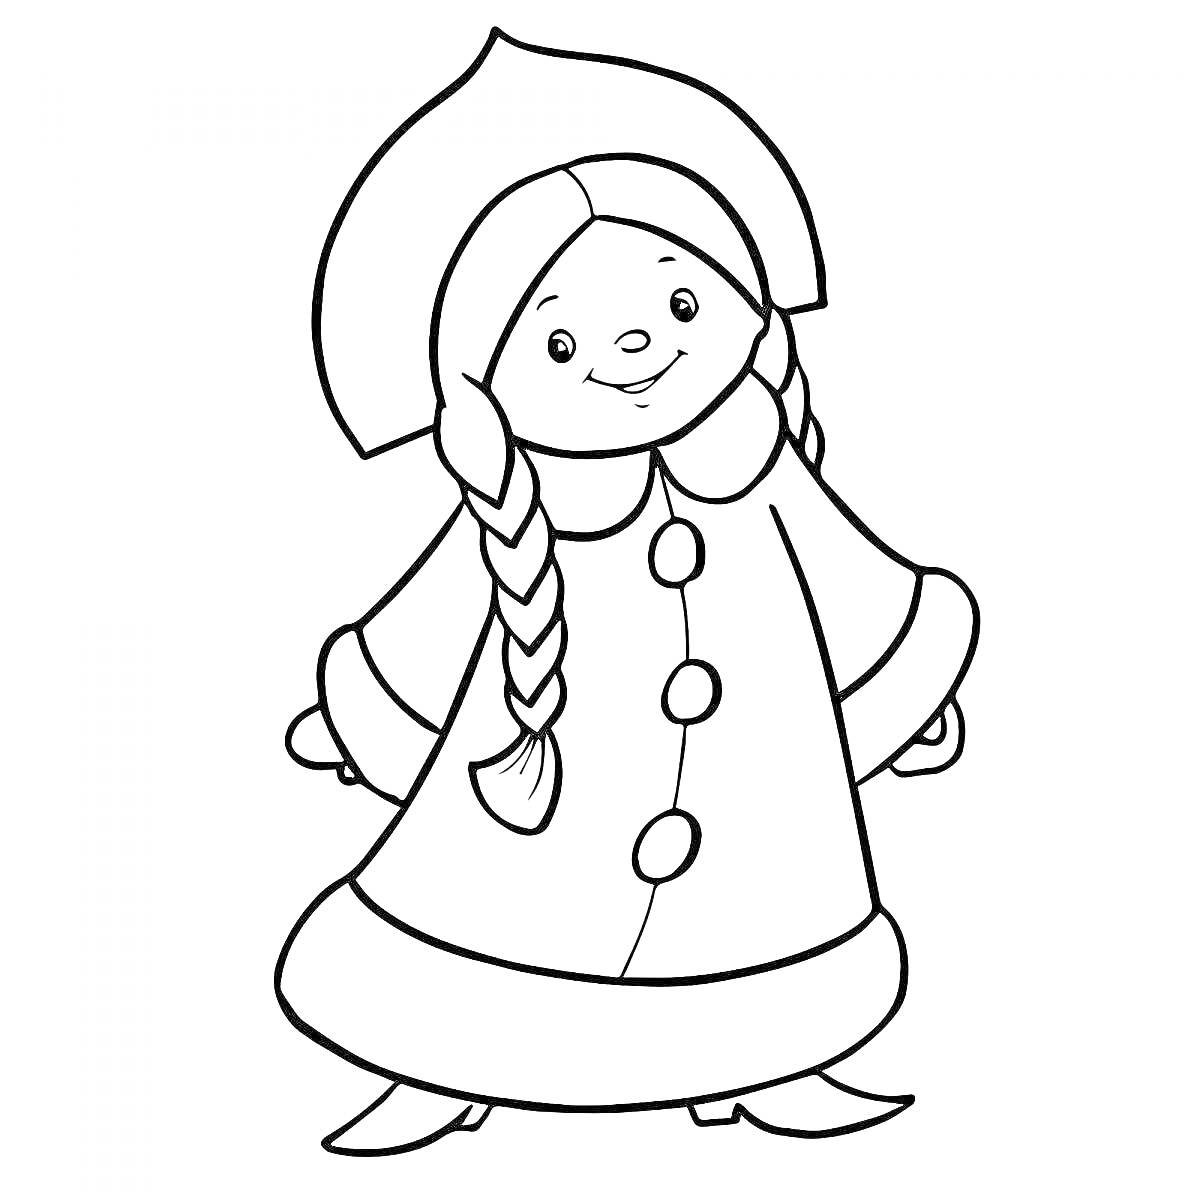 Раскраска Девочка-снегурочка с косичками в шапке и пальто с пуговицами